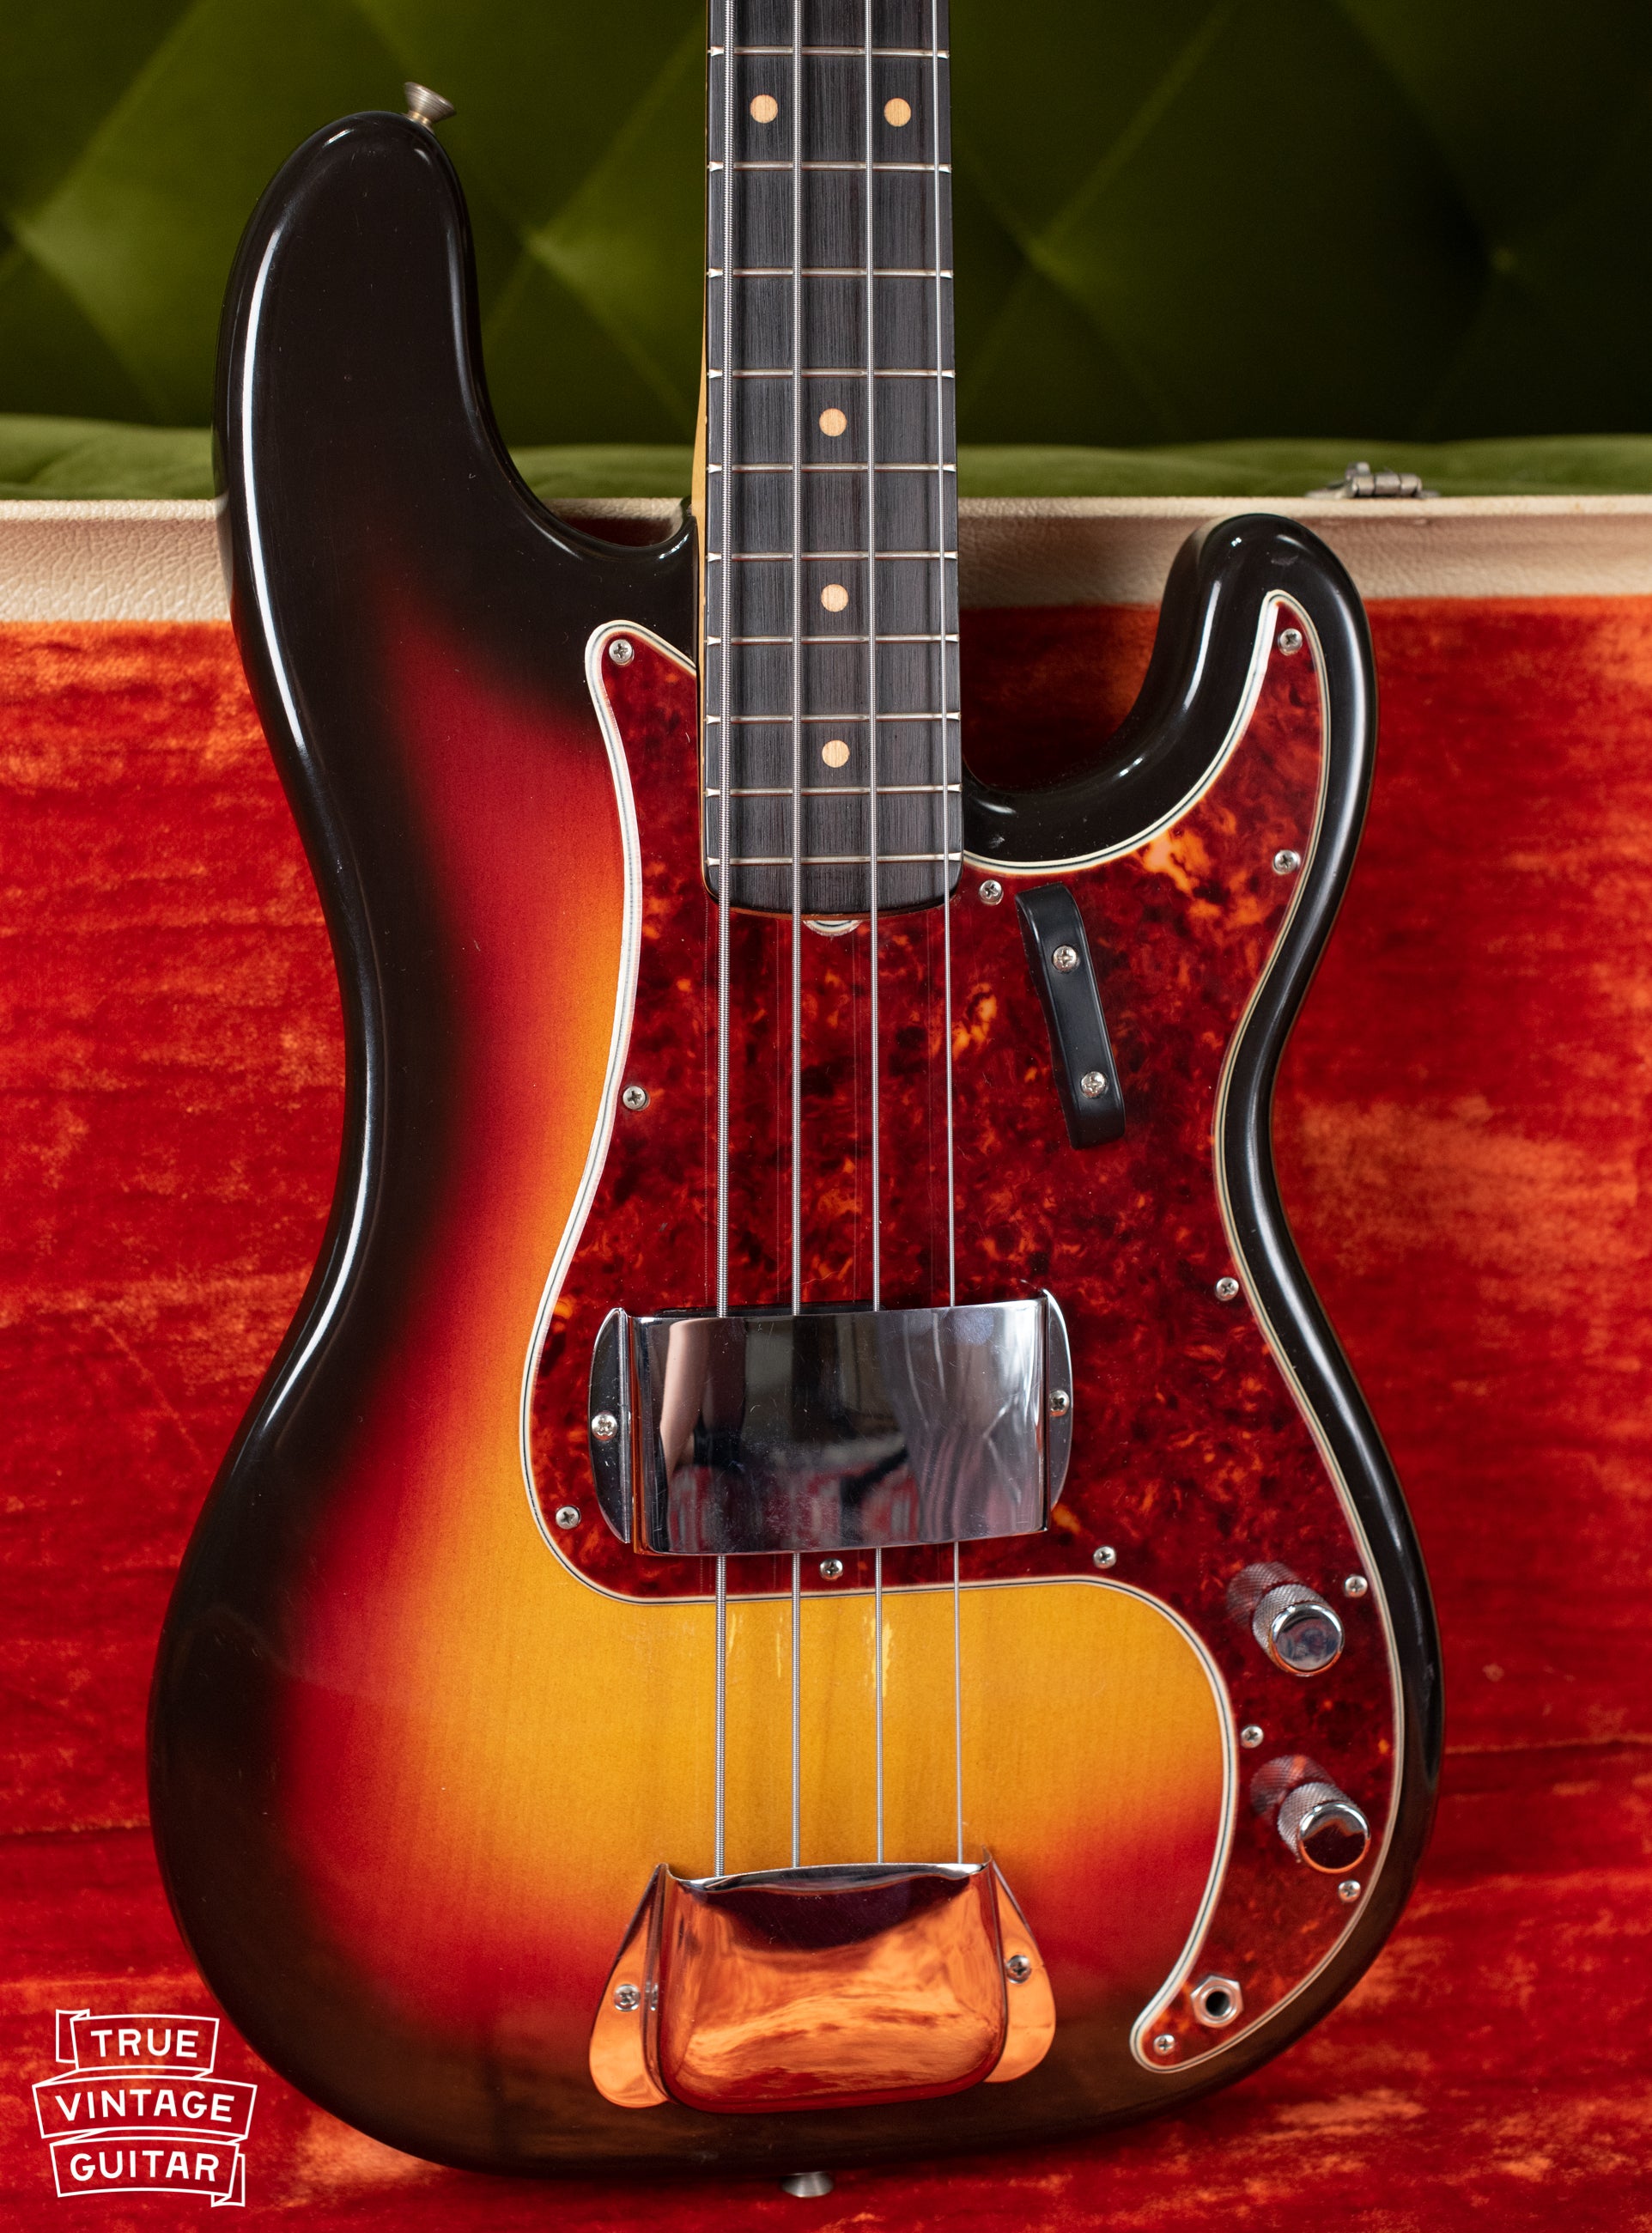 1963 Fender Precision Bass guitar